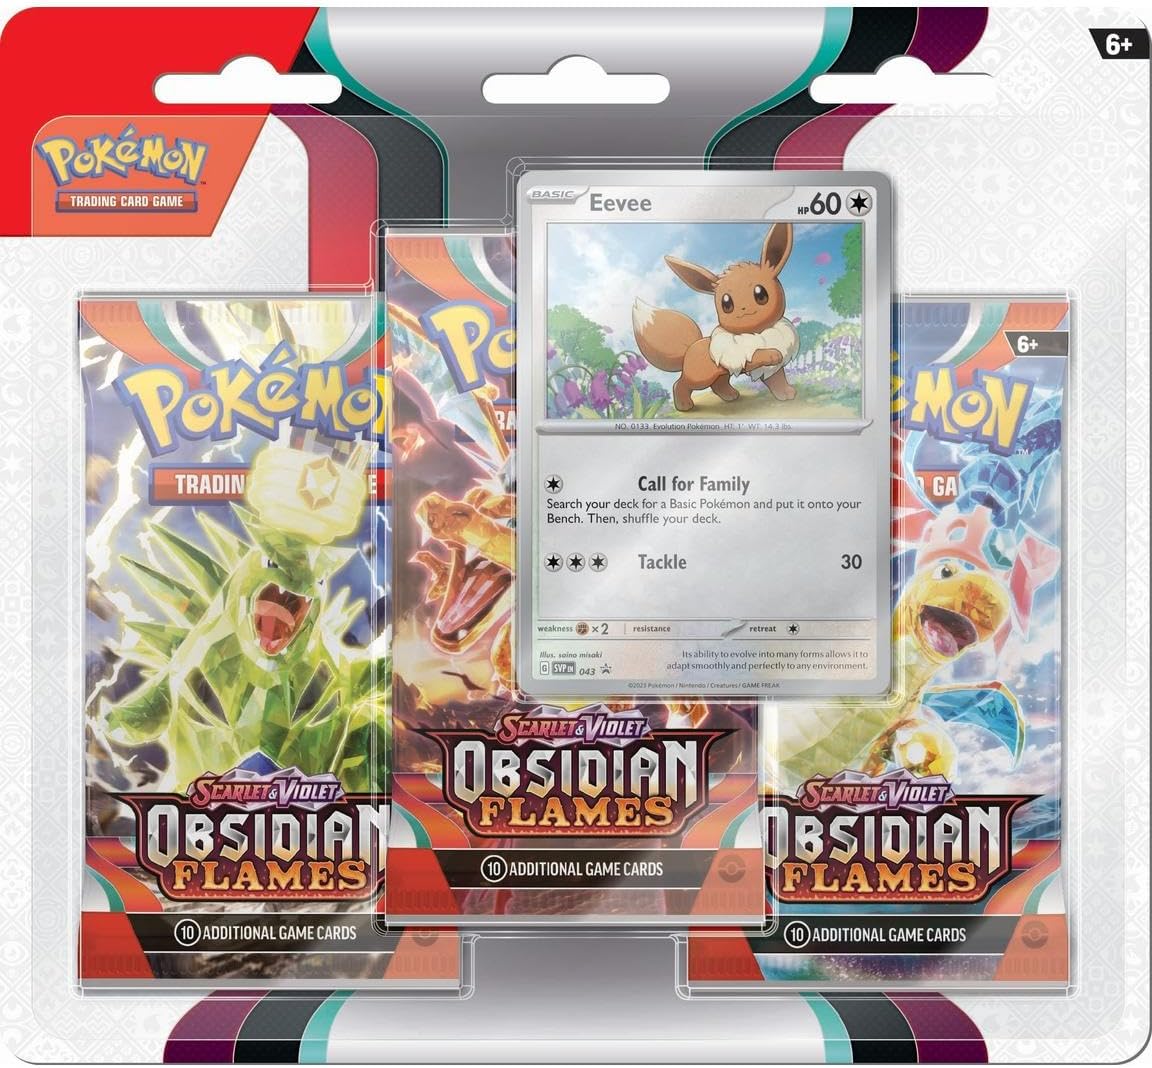 Pokémon JCC – Escarlata y Violeta – Pack de 3 Boosters de Llamas Obsidianas Eevee